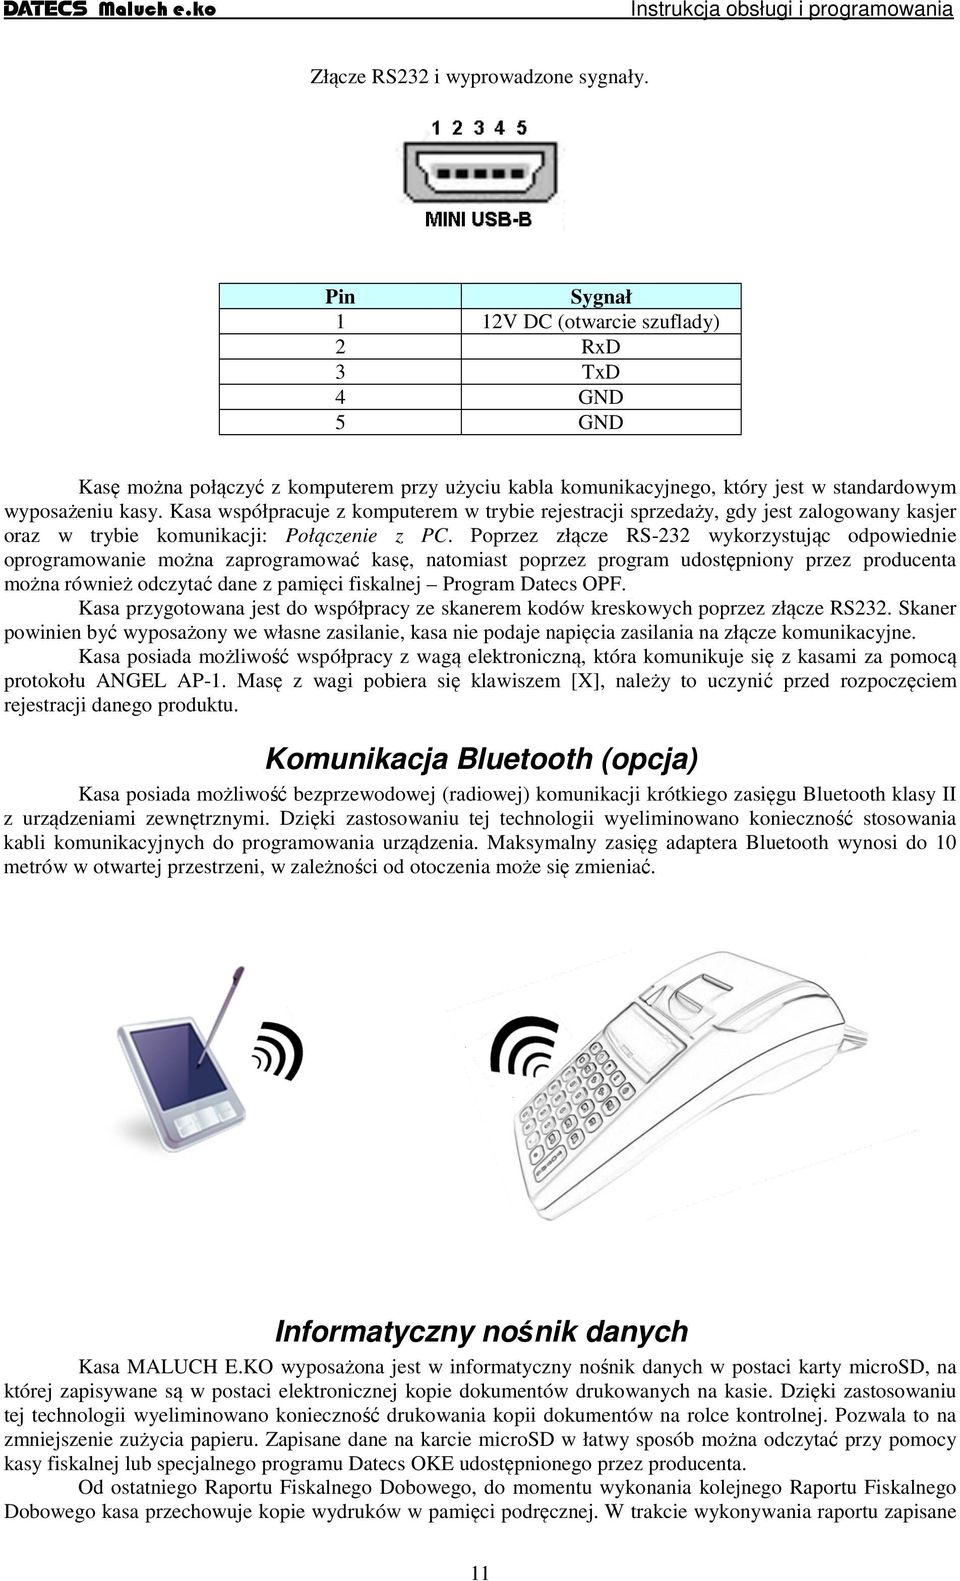 Kasa współpracuje z komputerem w trybie rejestracji sprzedaży, gdy jest zalogowany kasjer oraz w trybie komunikacji: Połączenie z PC.